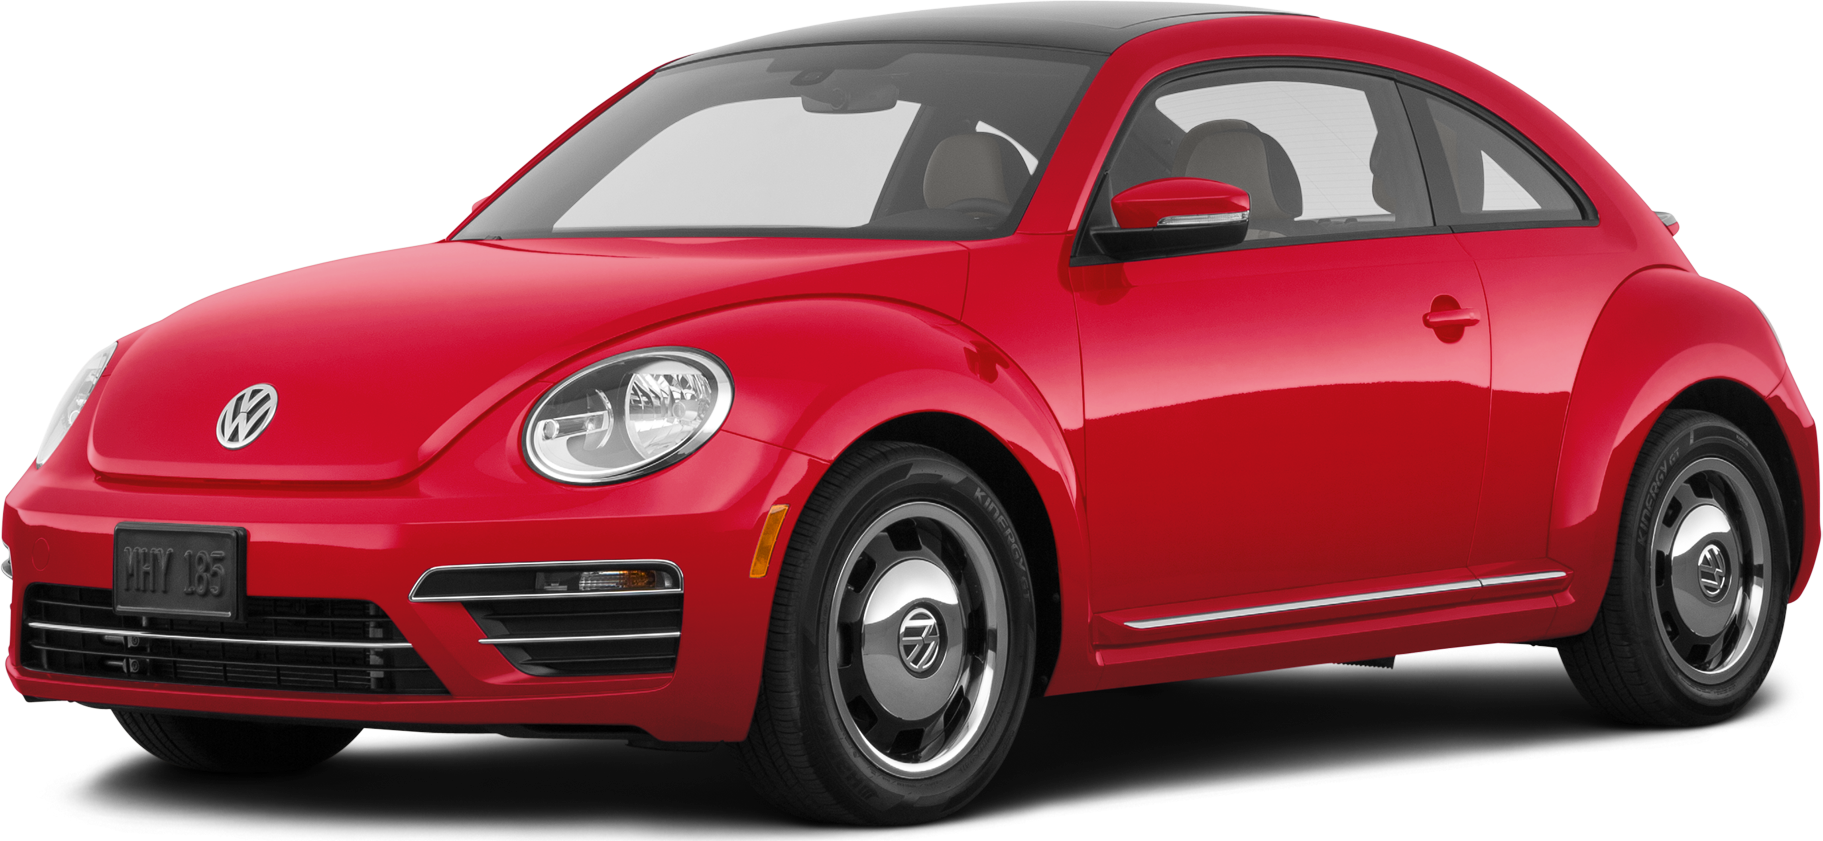 2018 Volkswagen Beetle Price, Value, Ratings & Reviews